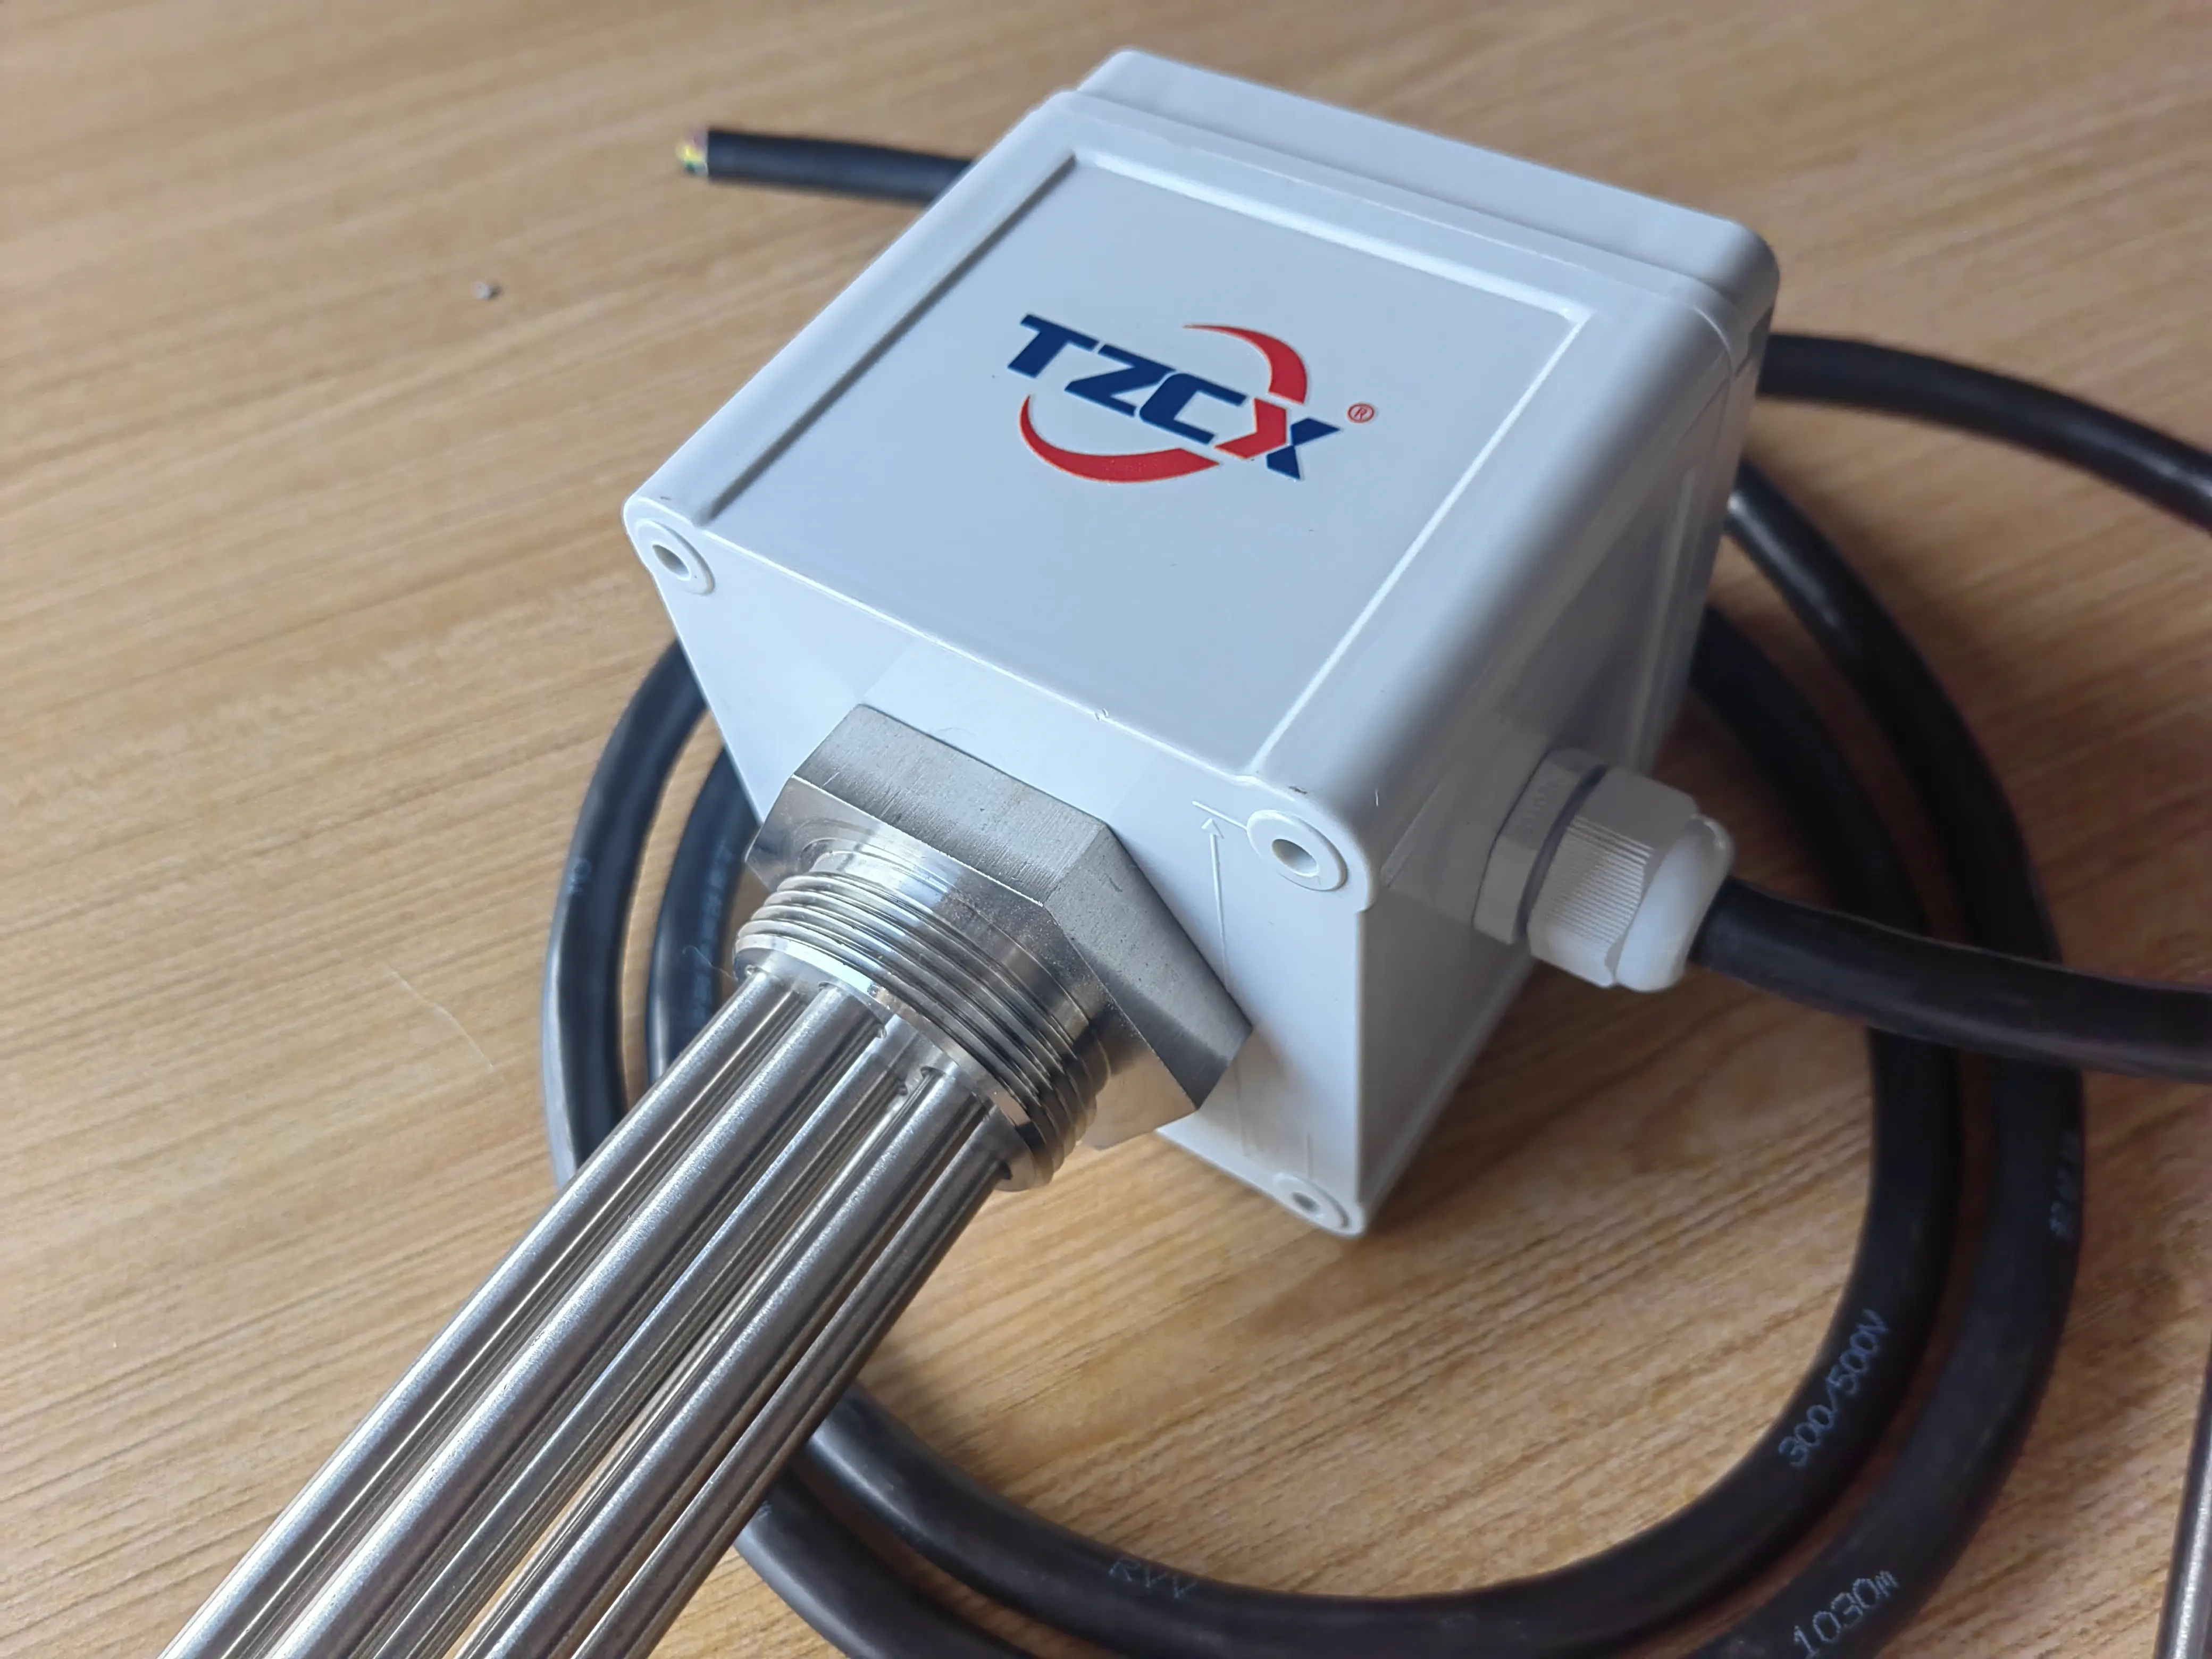 TZCX Marke 230V/400V 2KW 3KW 5KW 6KW oder kunden spezifisches elektrisches Warmwasser bereiter heizelement mit einstellbarem Thermostat